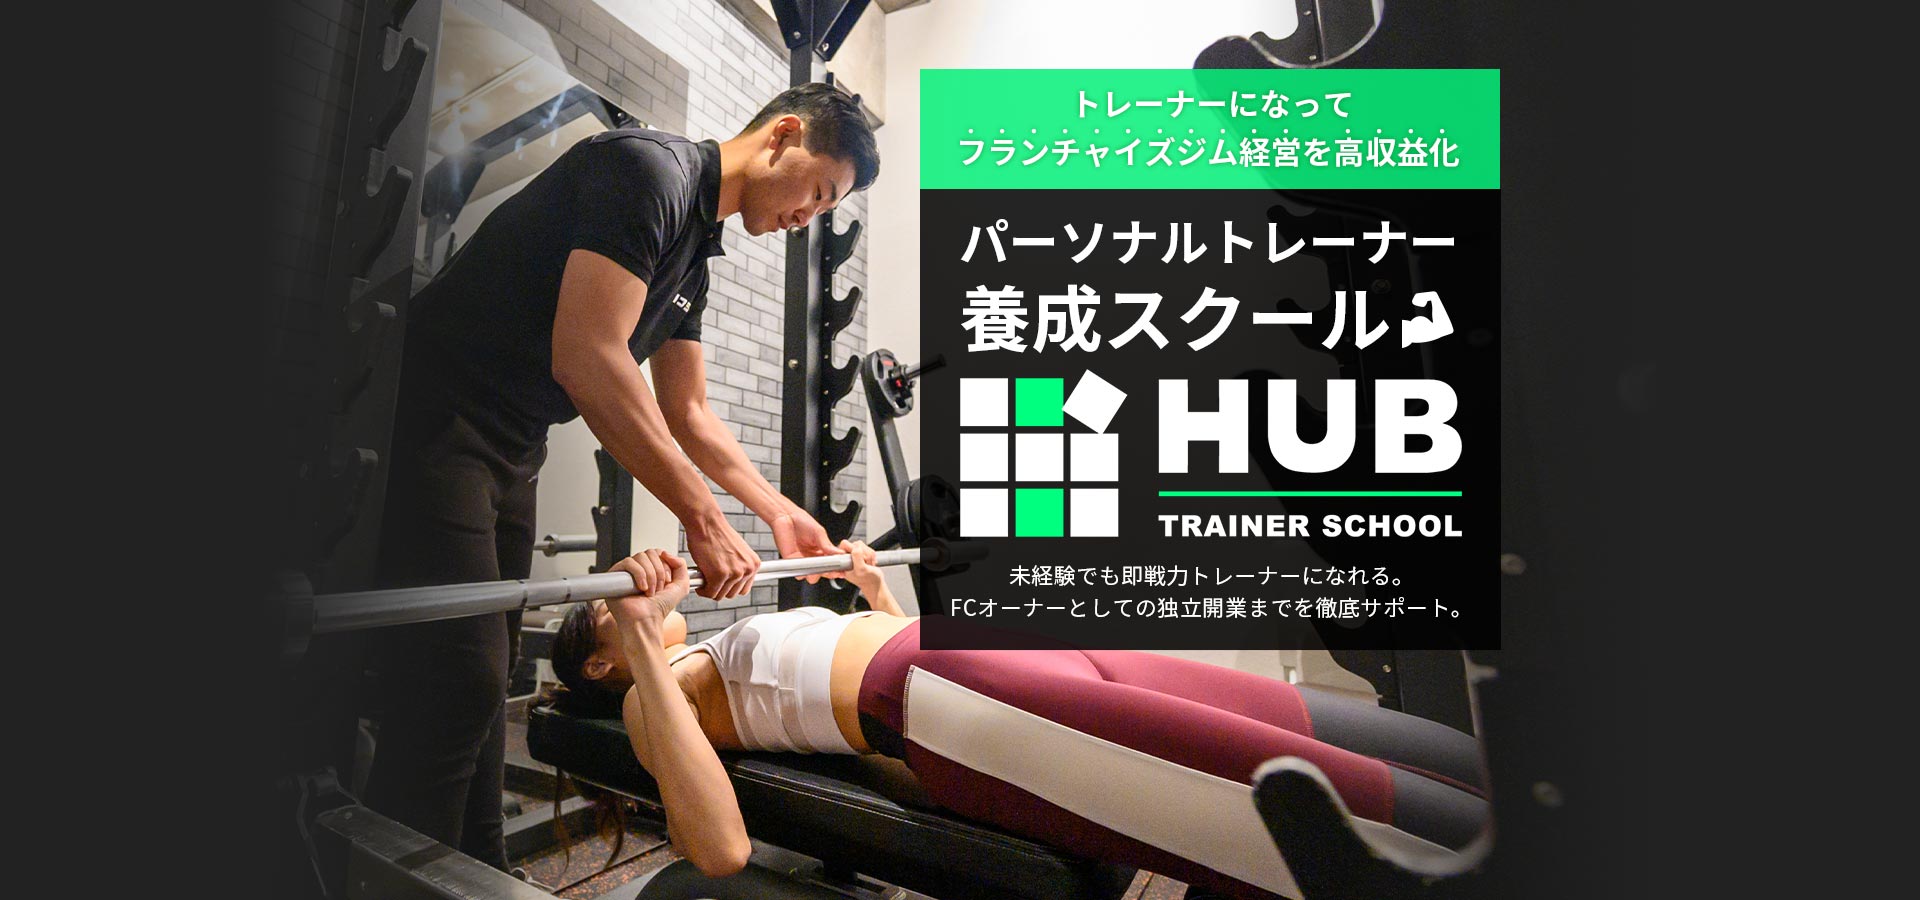 パーソナルトレーナー養成スクール | HUB Trainer School